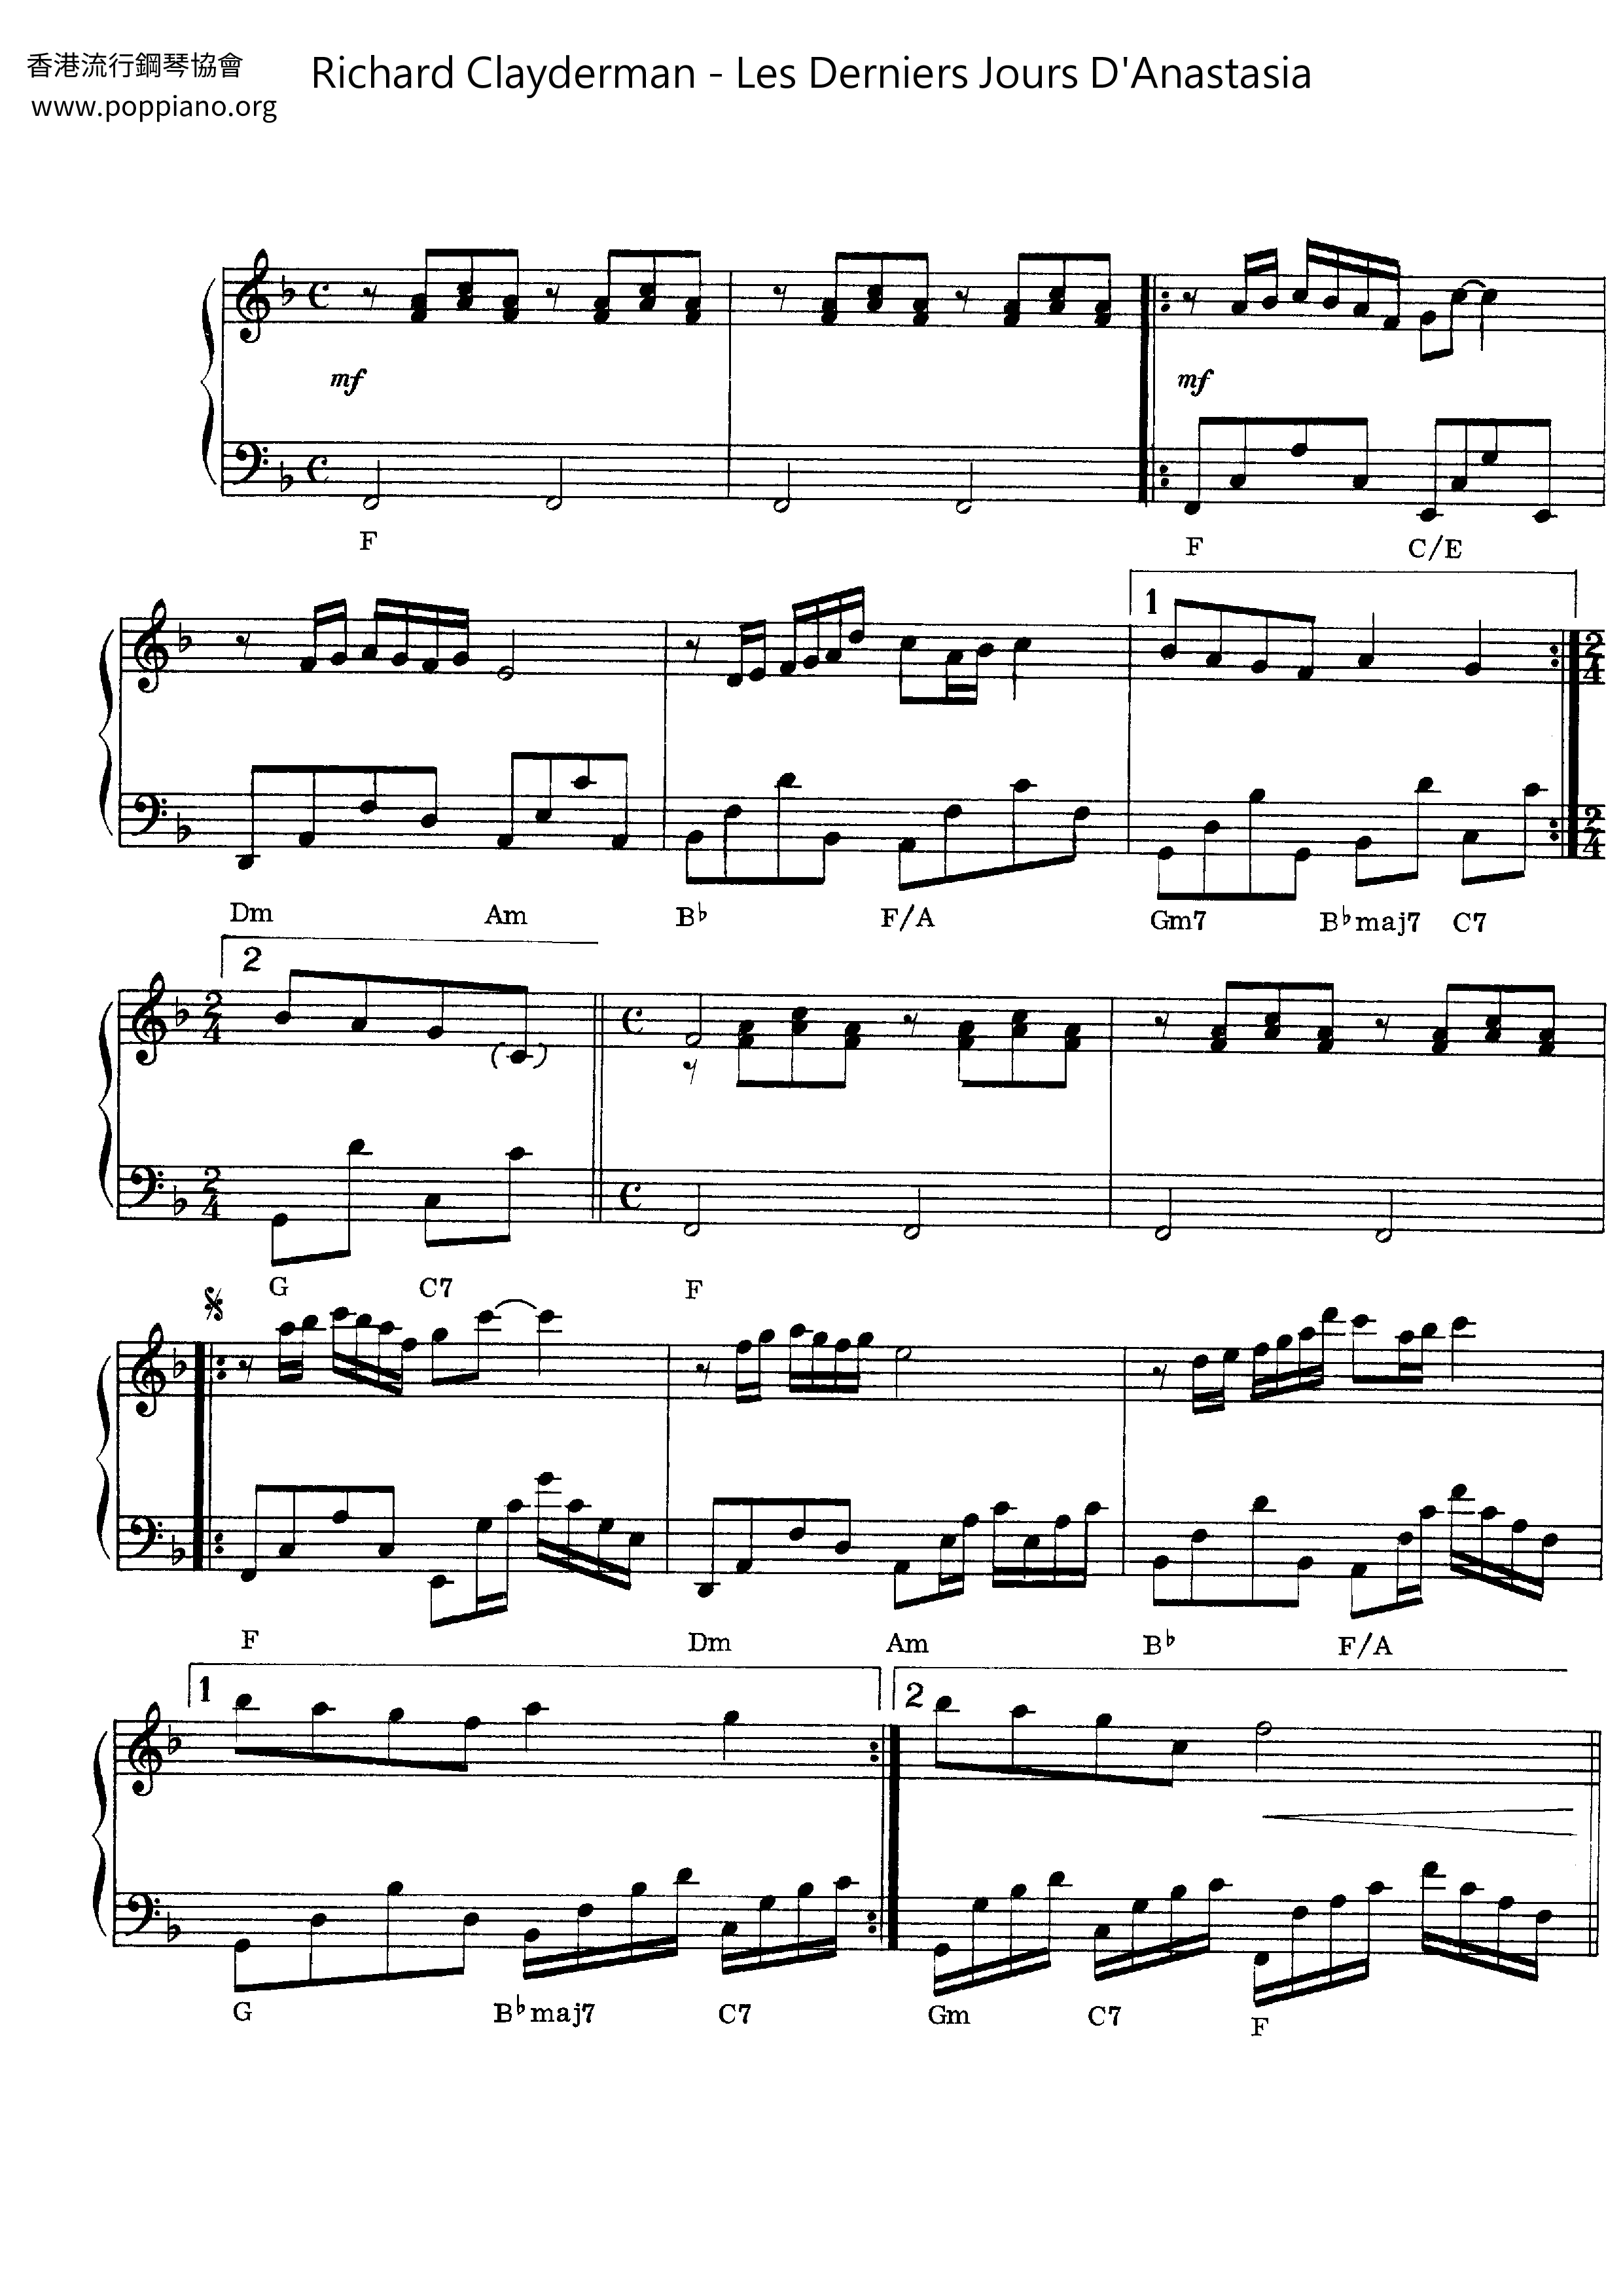 Les Derniers Jours D'Anastasia Score